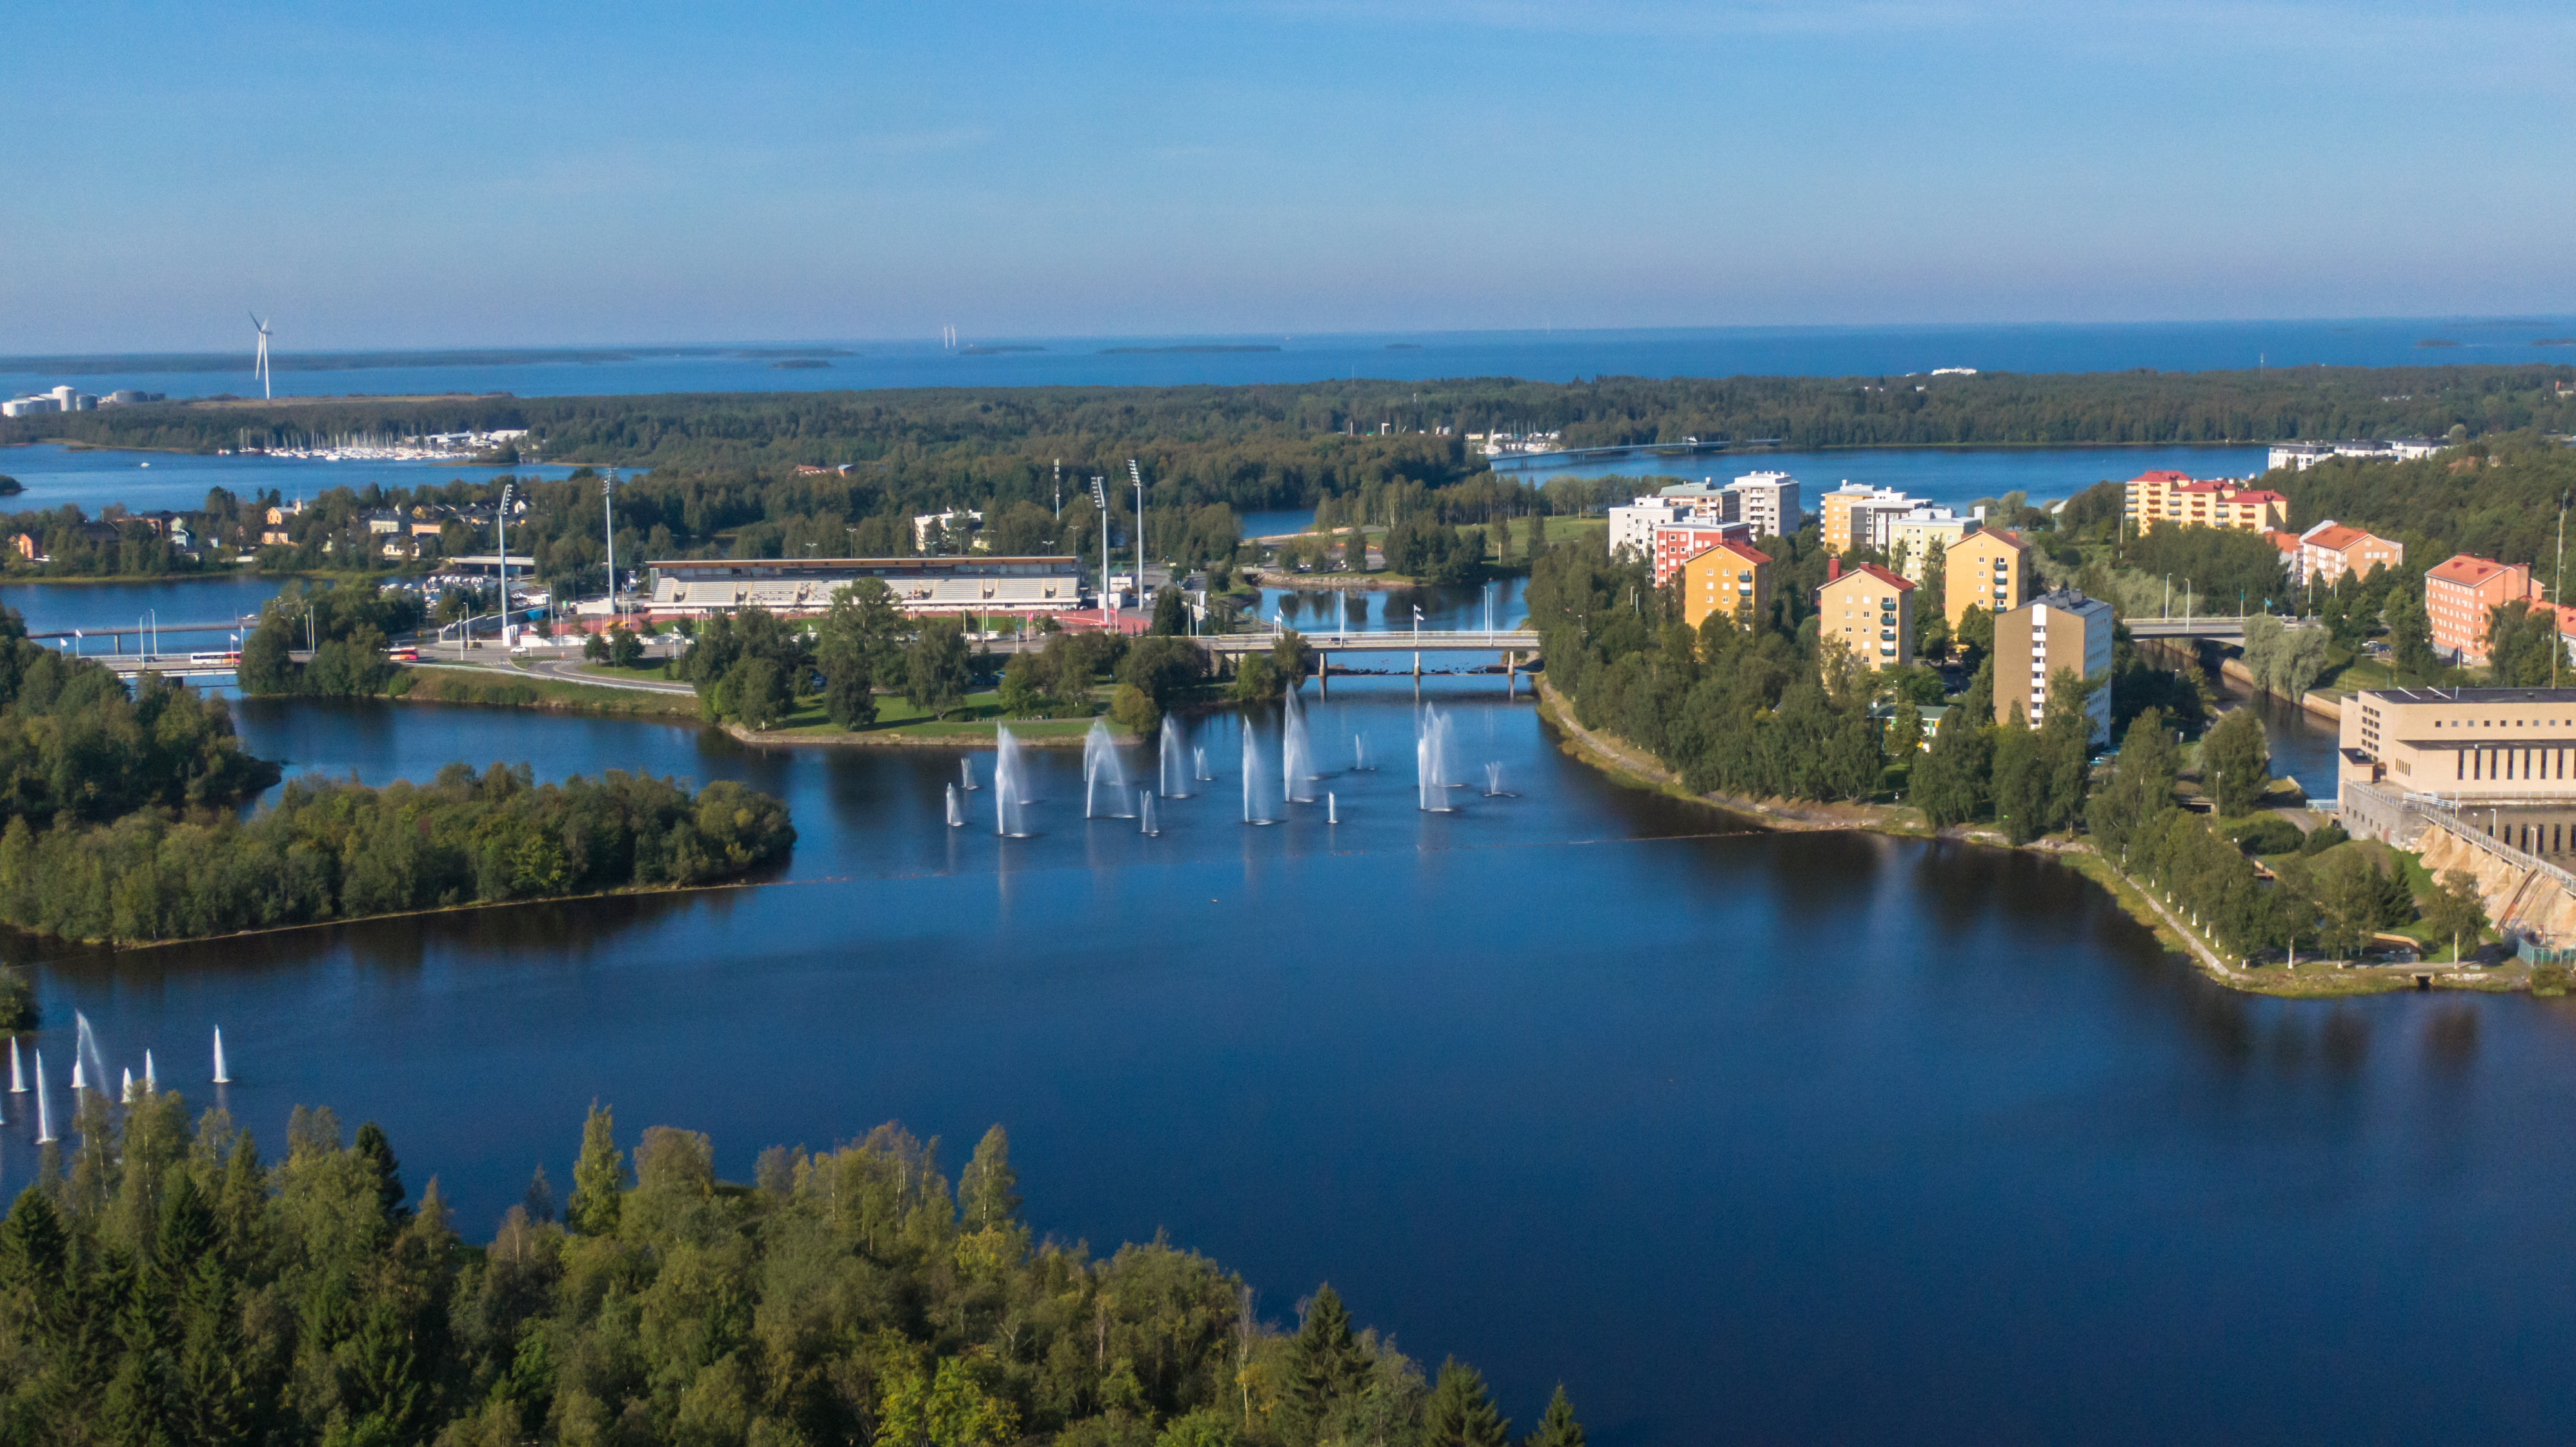 Maisemakuva lintuperspektiivistä, jossa on Oulujoen suistoa ja Toivoniemen asuinalue. Kerrostaloja, sininen taivas ja kesäistä kaupunkia.